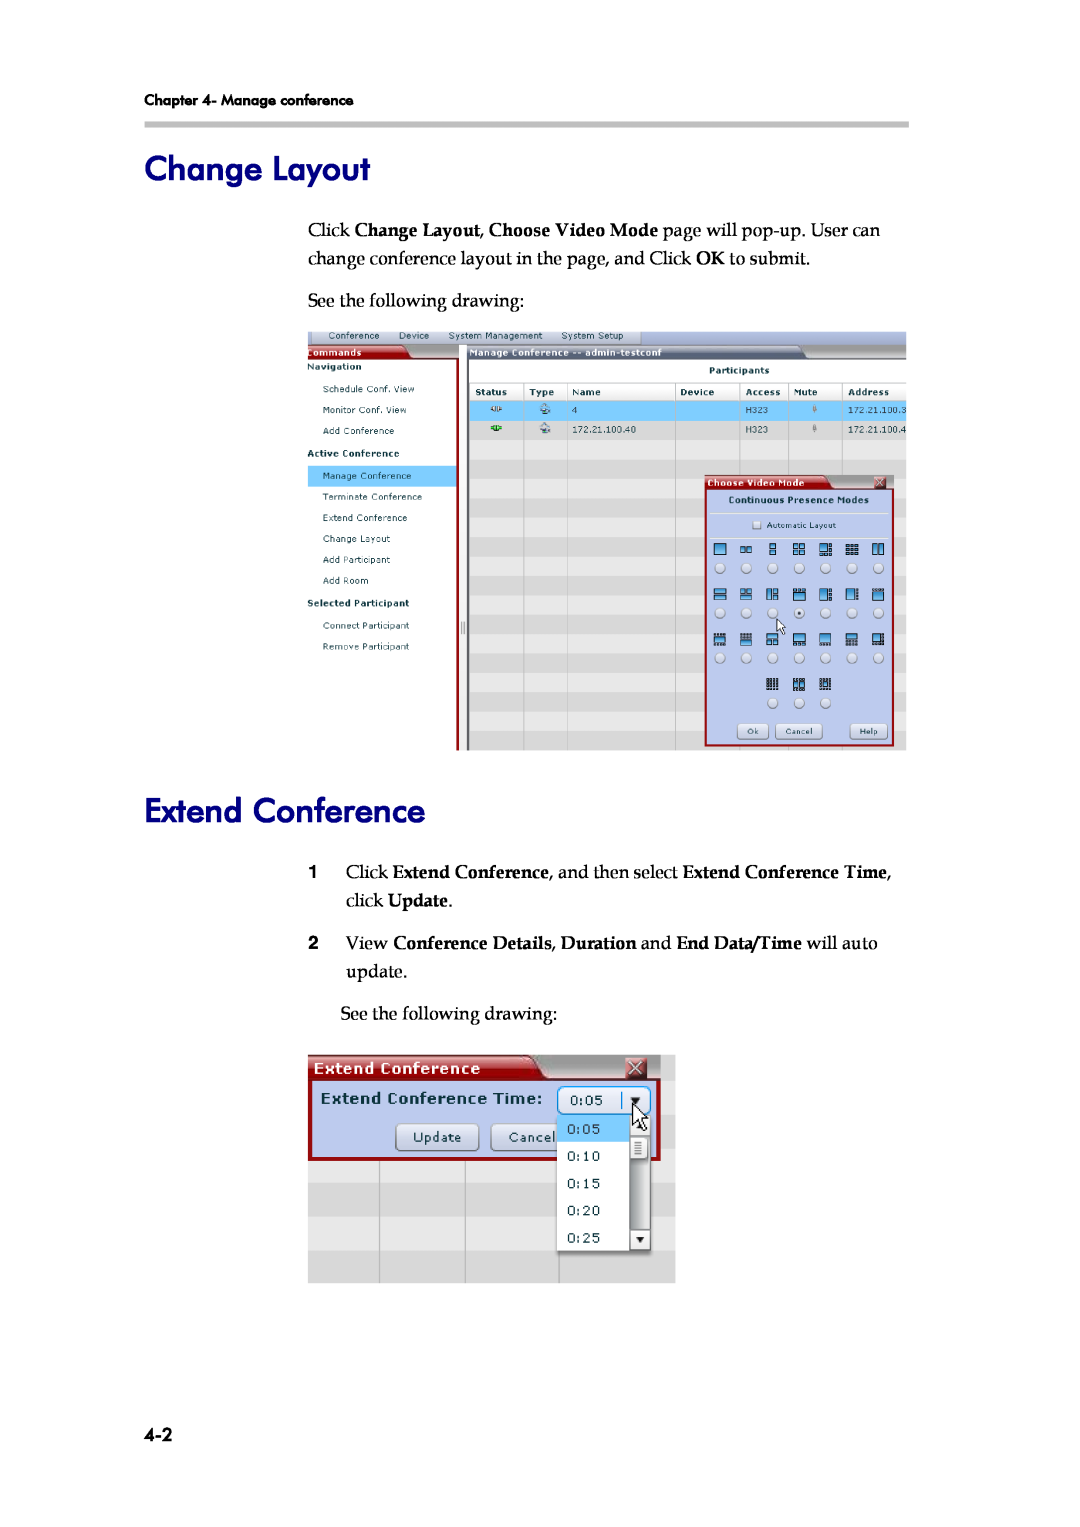 Polycom SE 200 V3.0.2/CMA, RMX 1000 V1.1.1 manual Change Layout, Extend Conference, Manage conference 